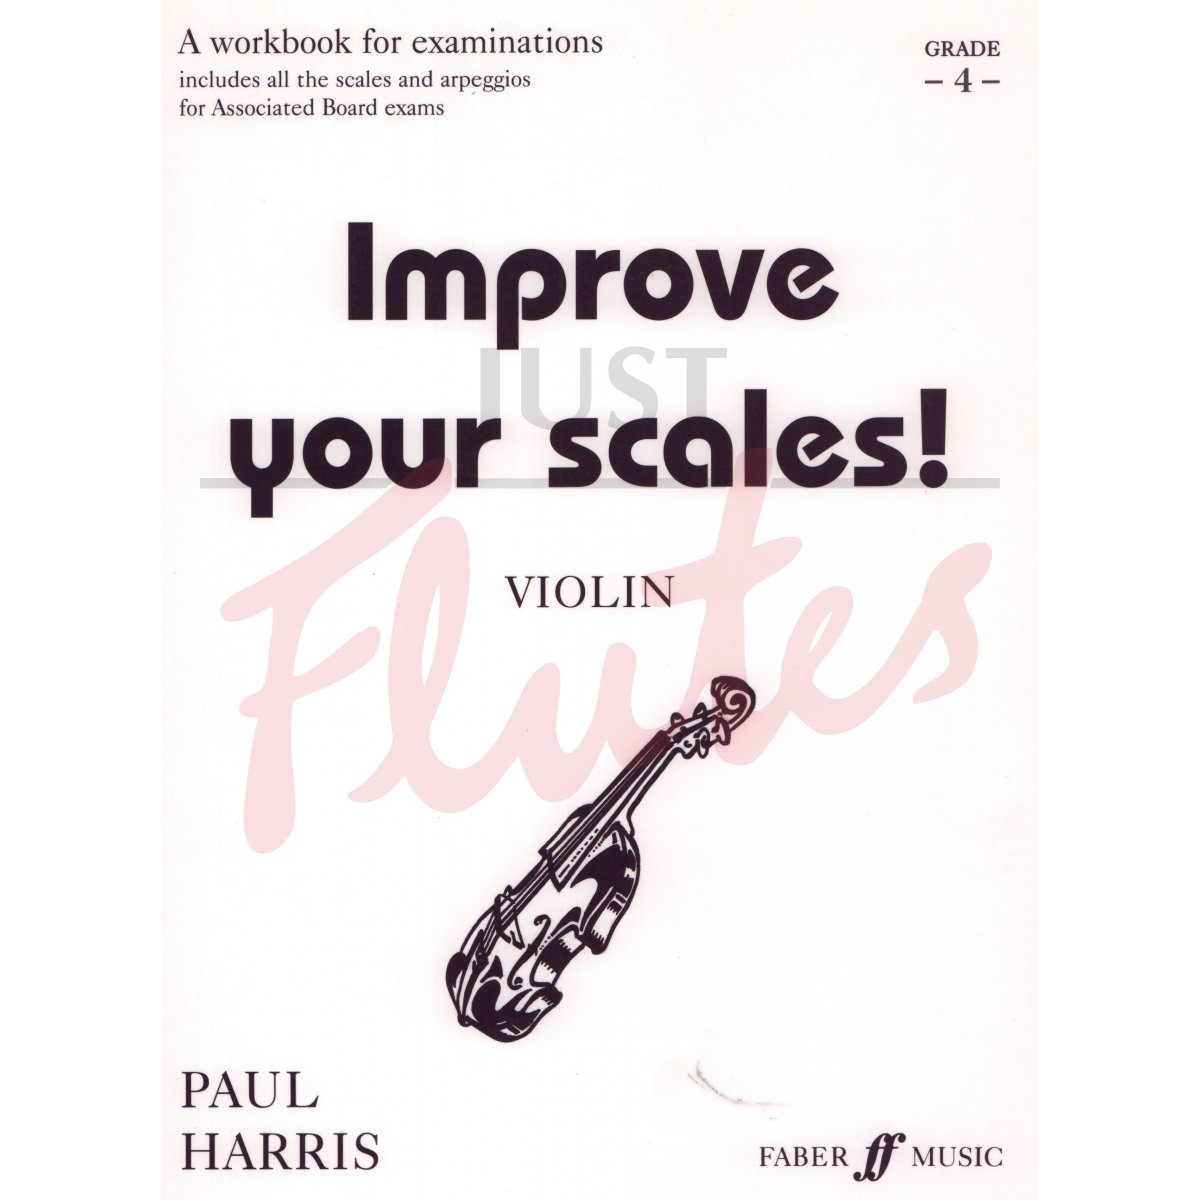 Improve Your Scales! [Violin] Grade 4